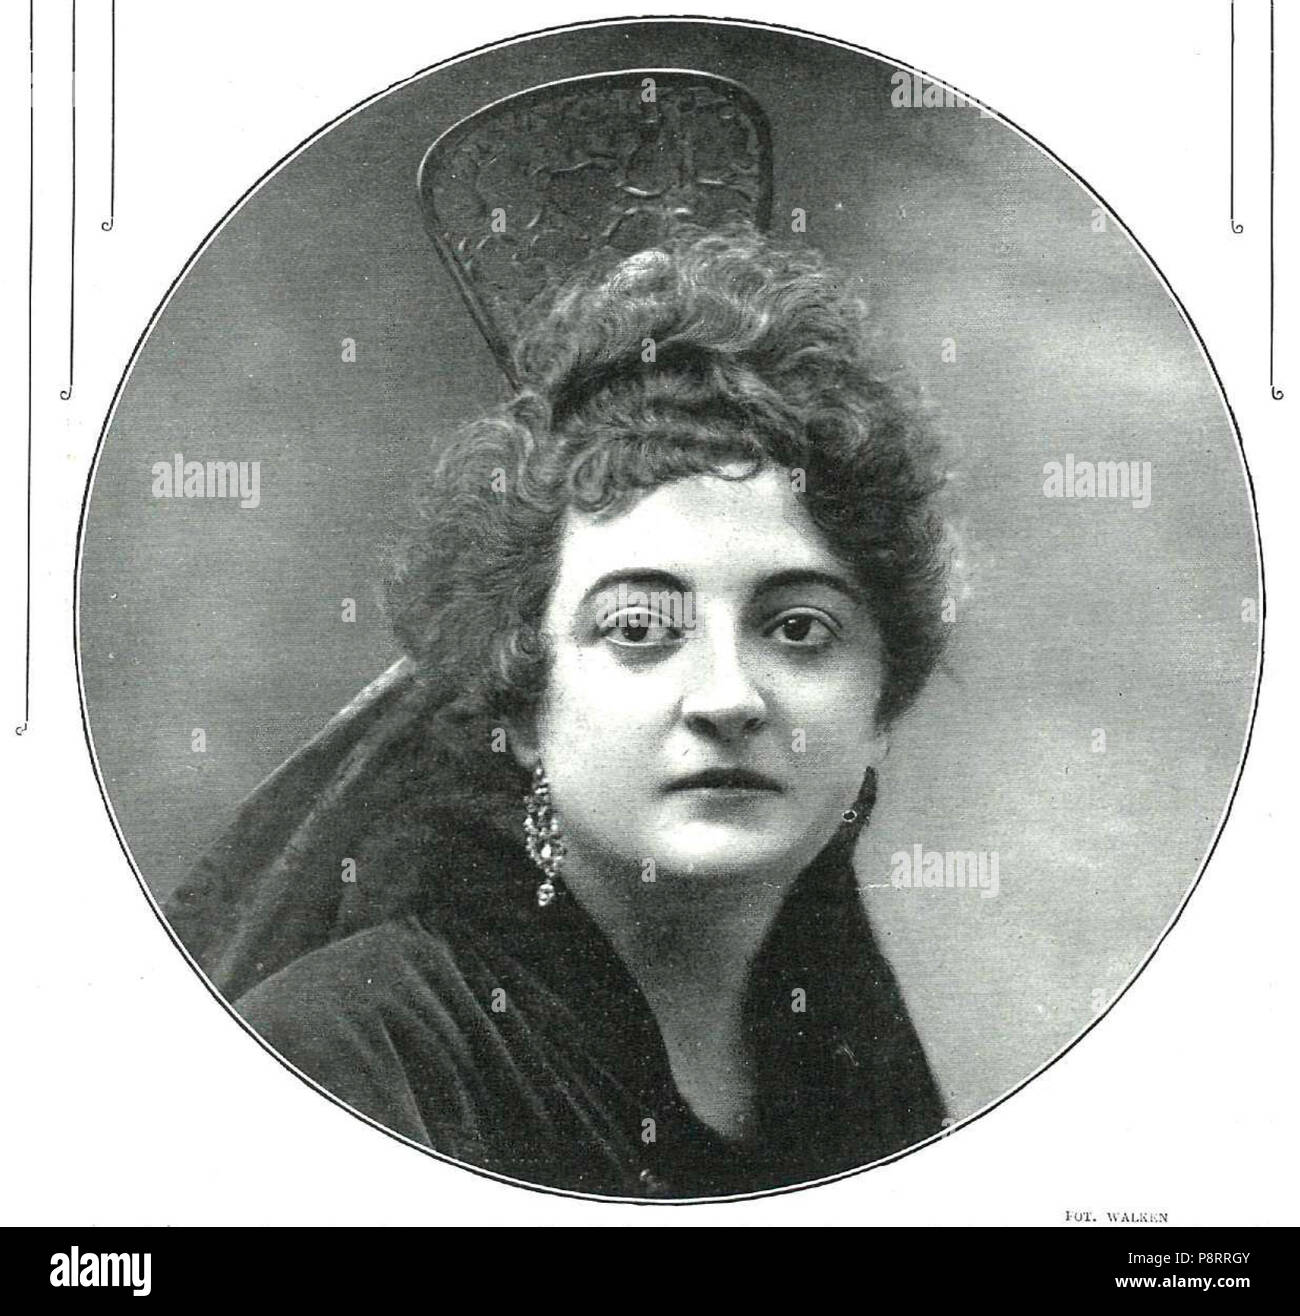 475 Rafaela Abadía de Walken, La Esfera, 30-12-1916 Stockfoto